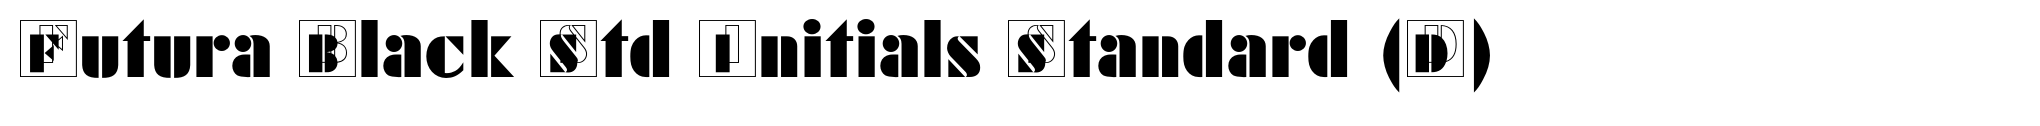 Futura Black Std Initials Standard (D) image